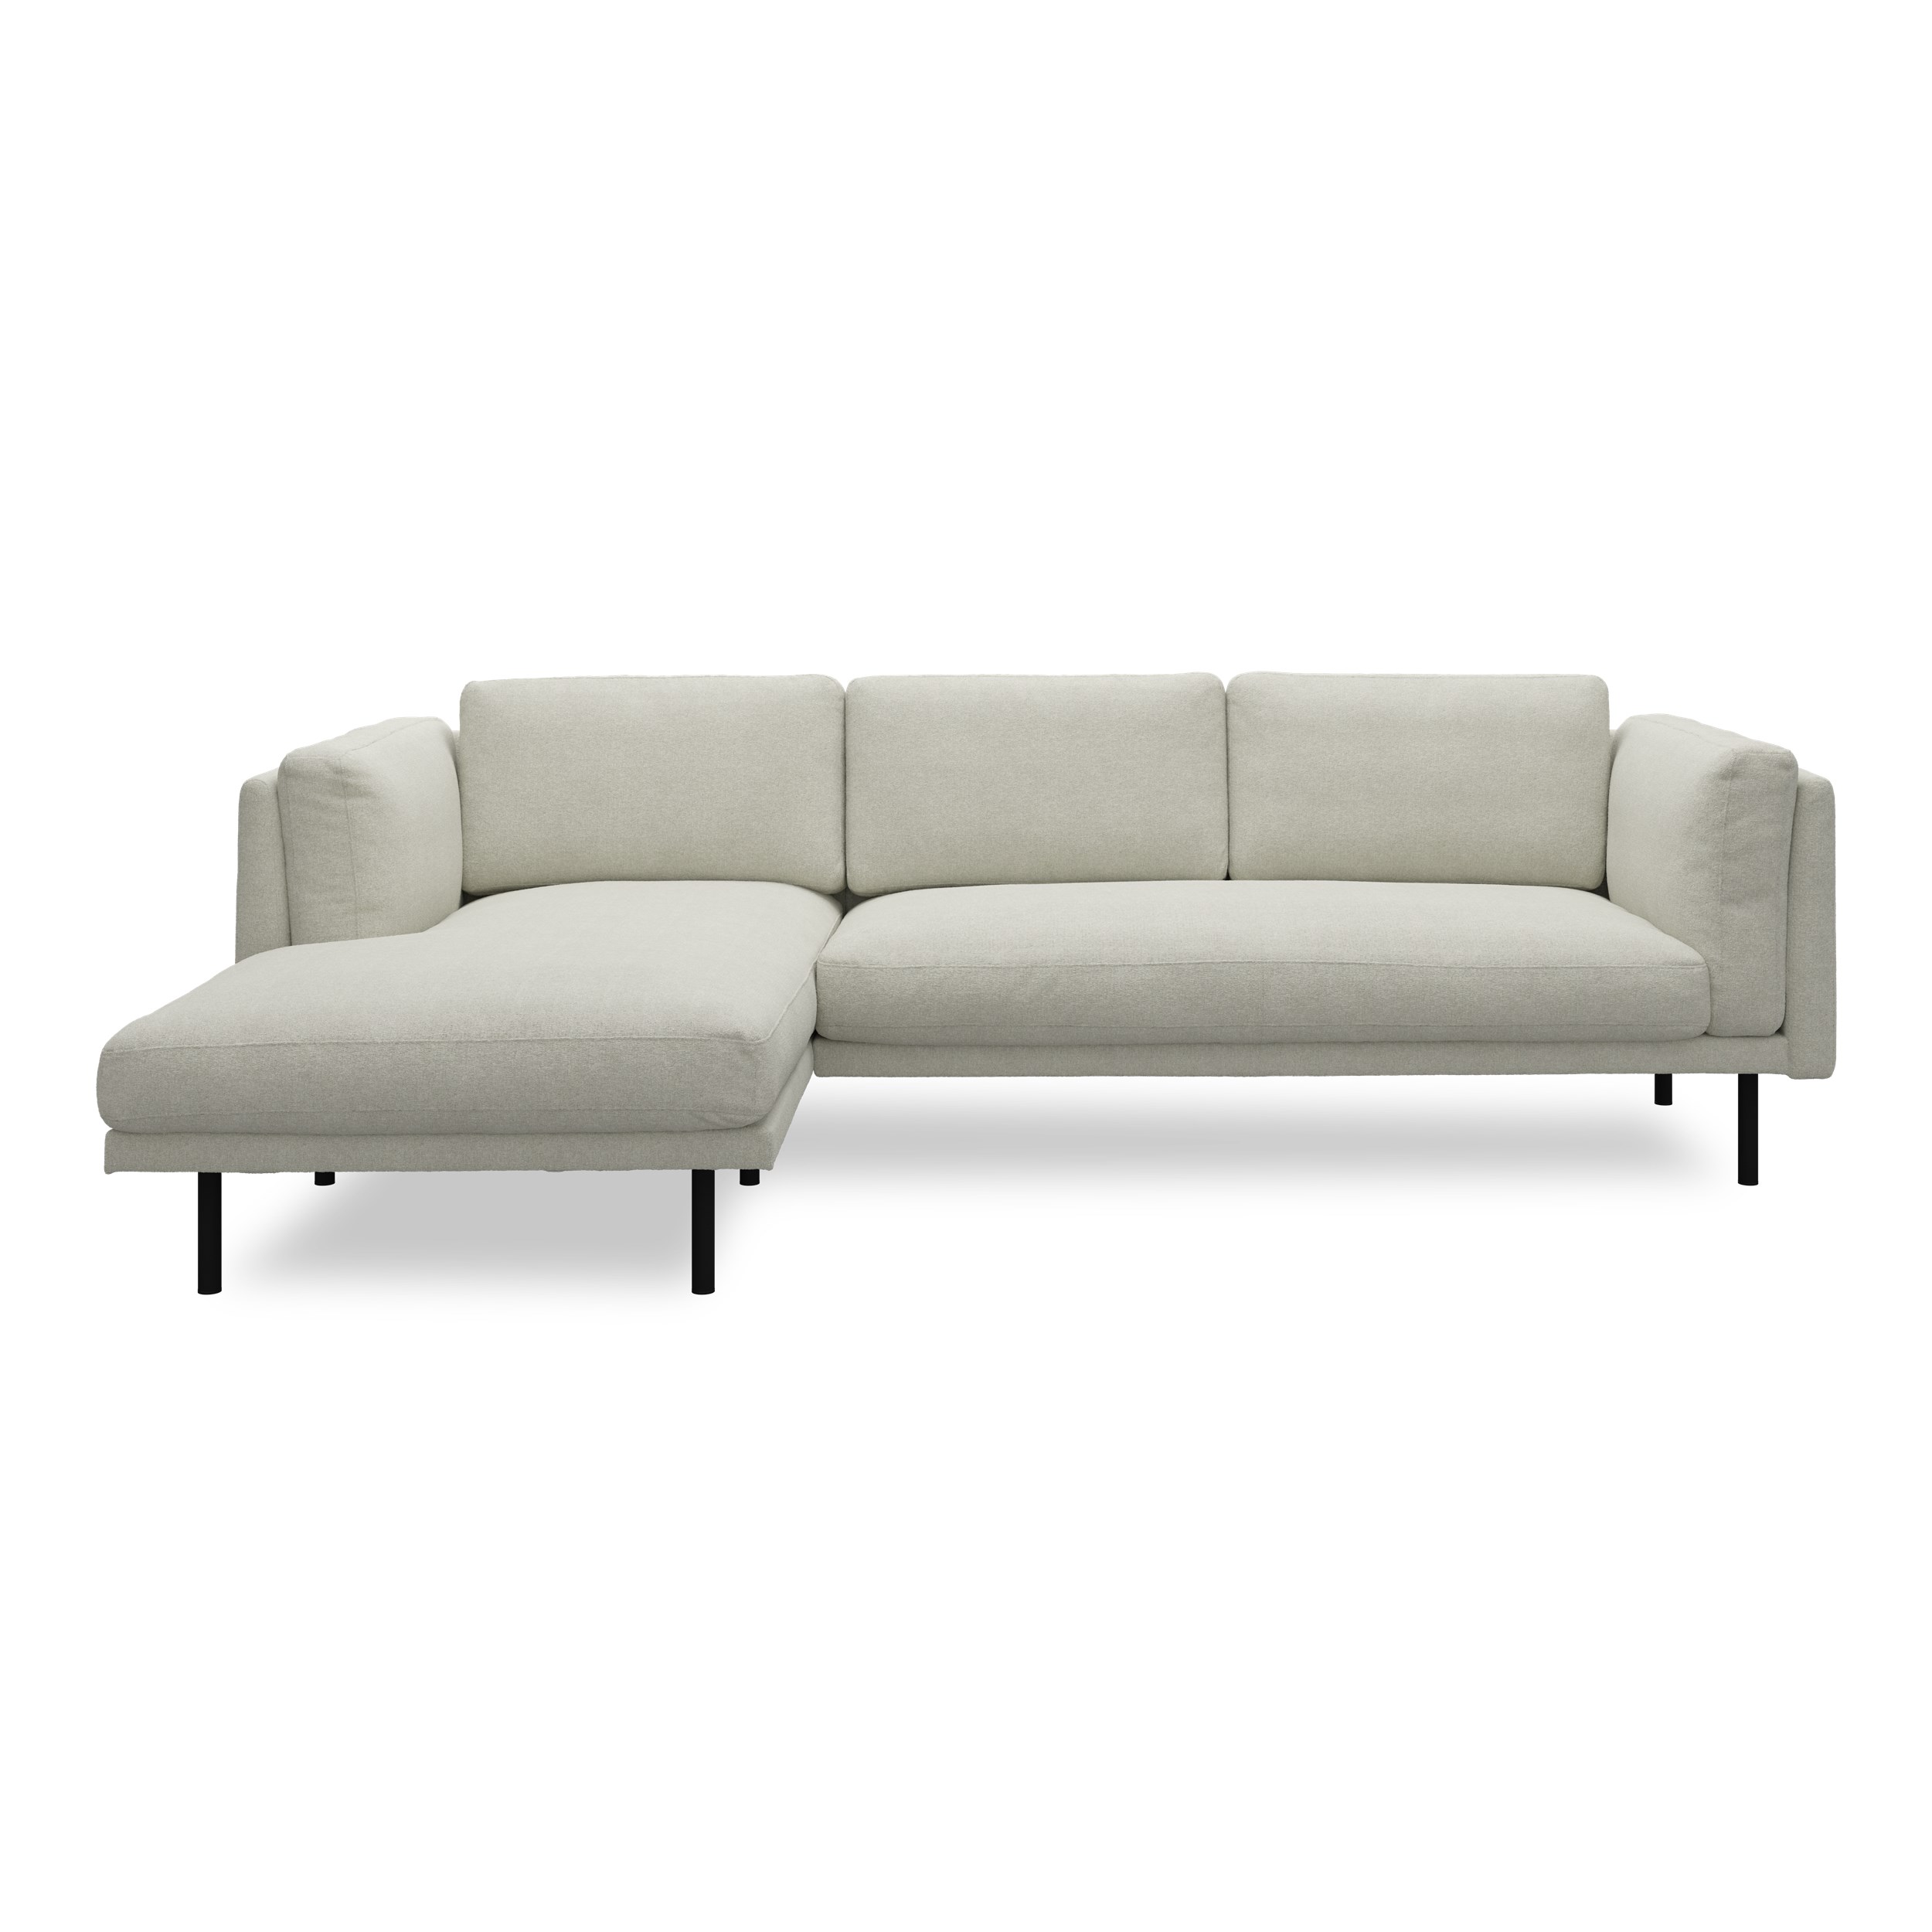 Nebel vänstervänd soffa med schäslong - Soil 149 Steel textil och svart pulverlackerad metall